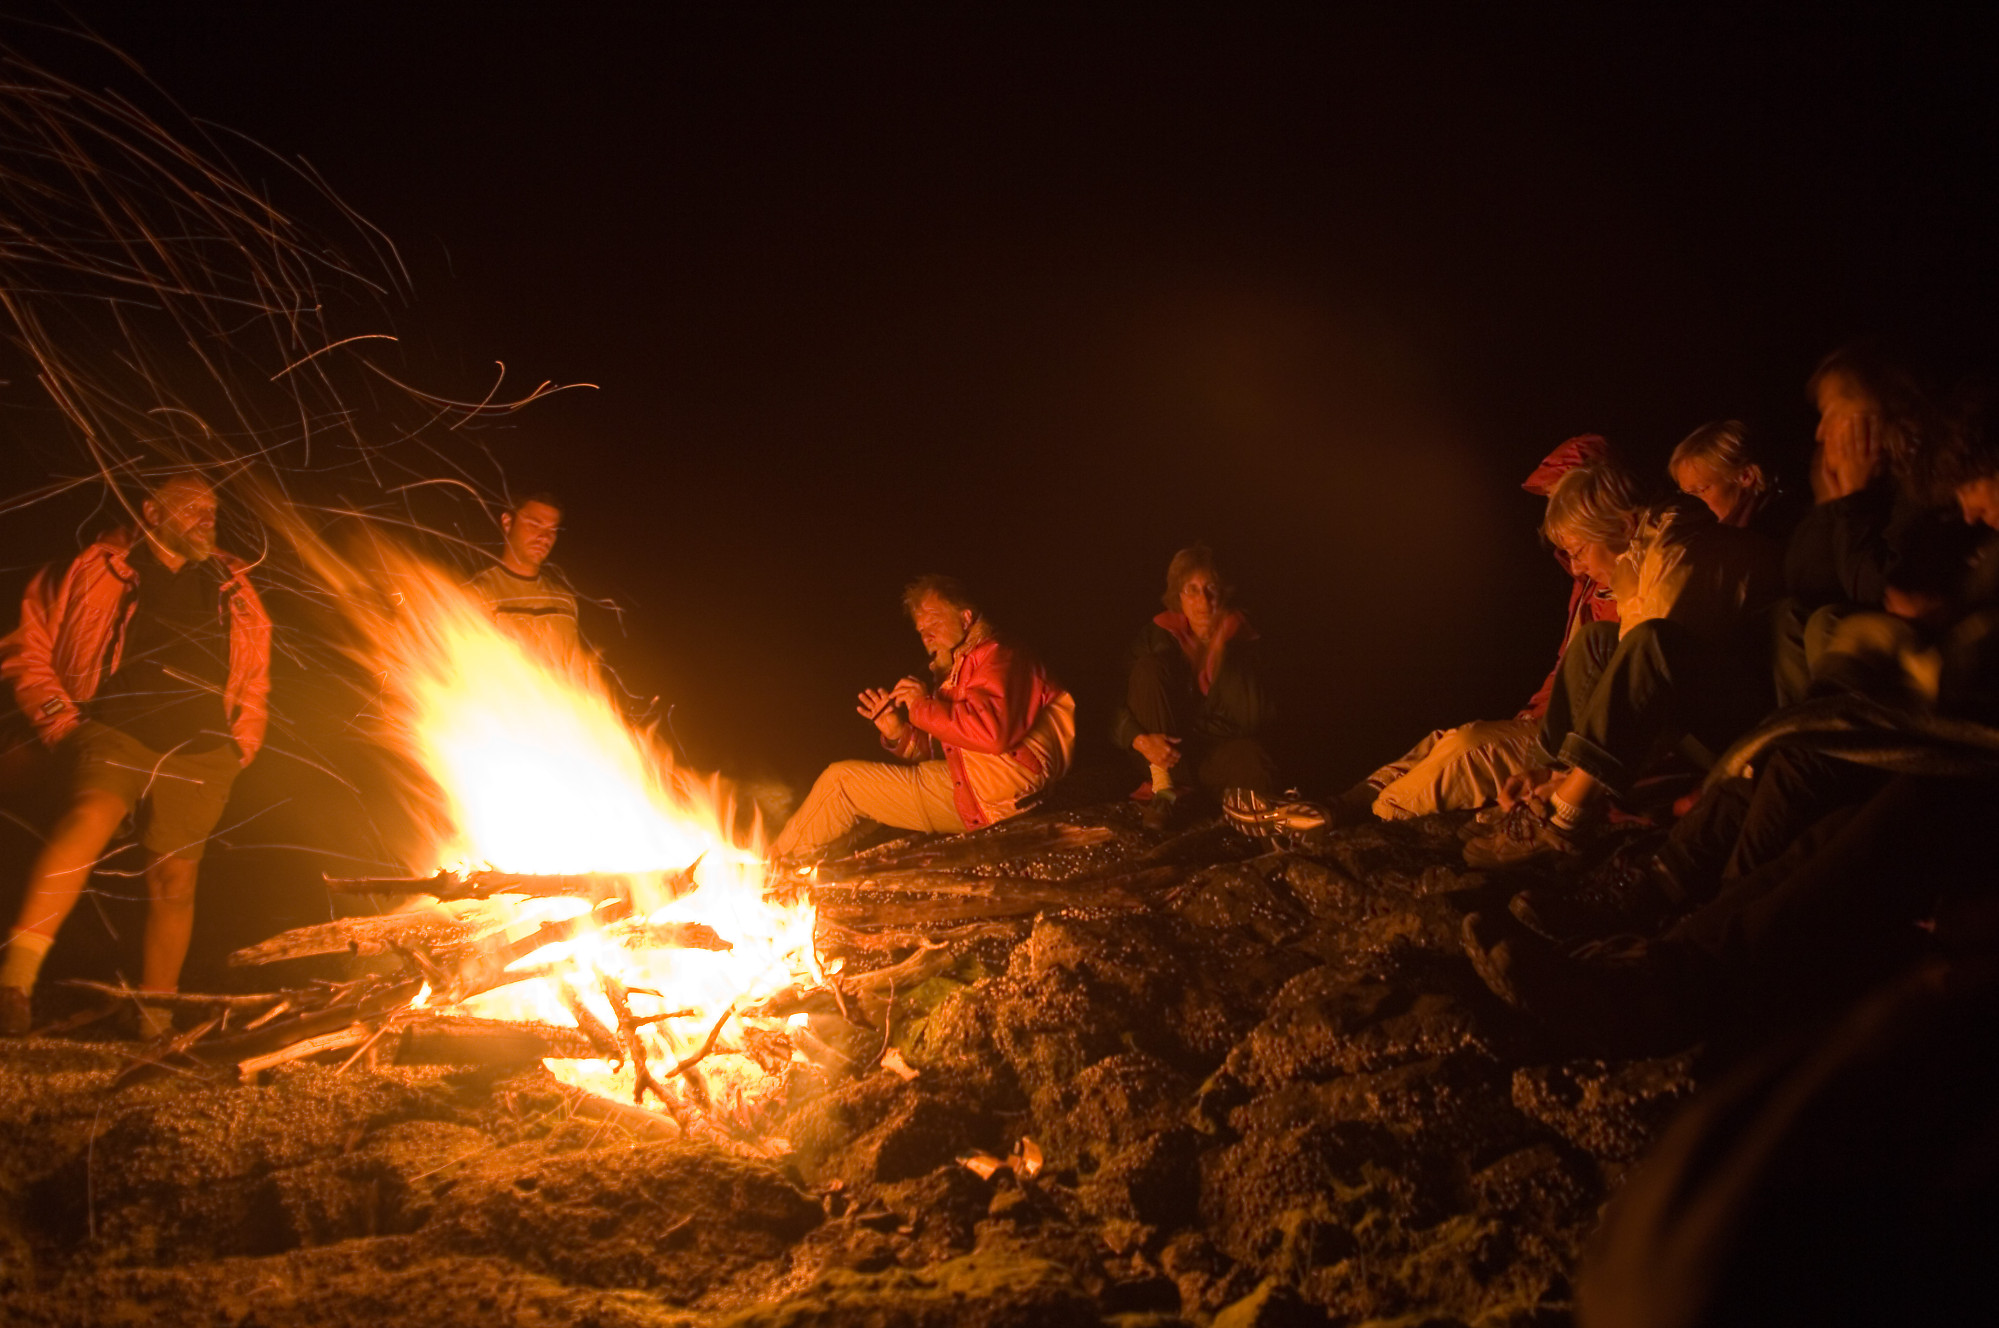 Campfire+pics